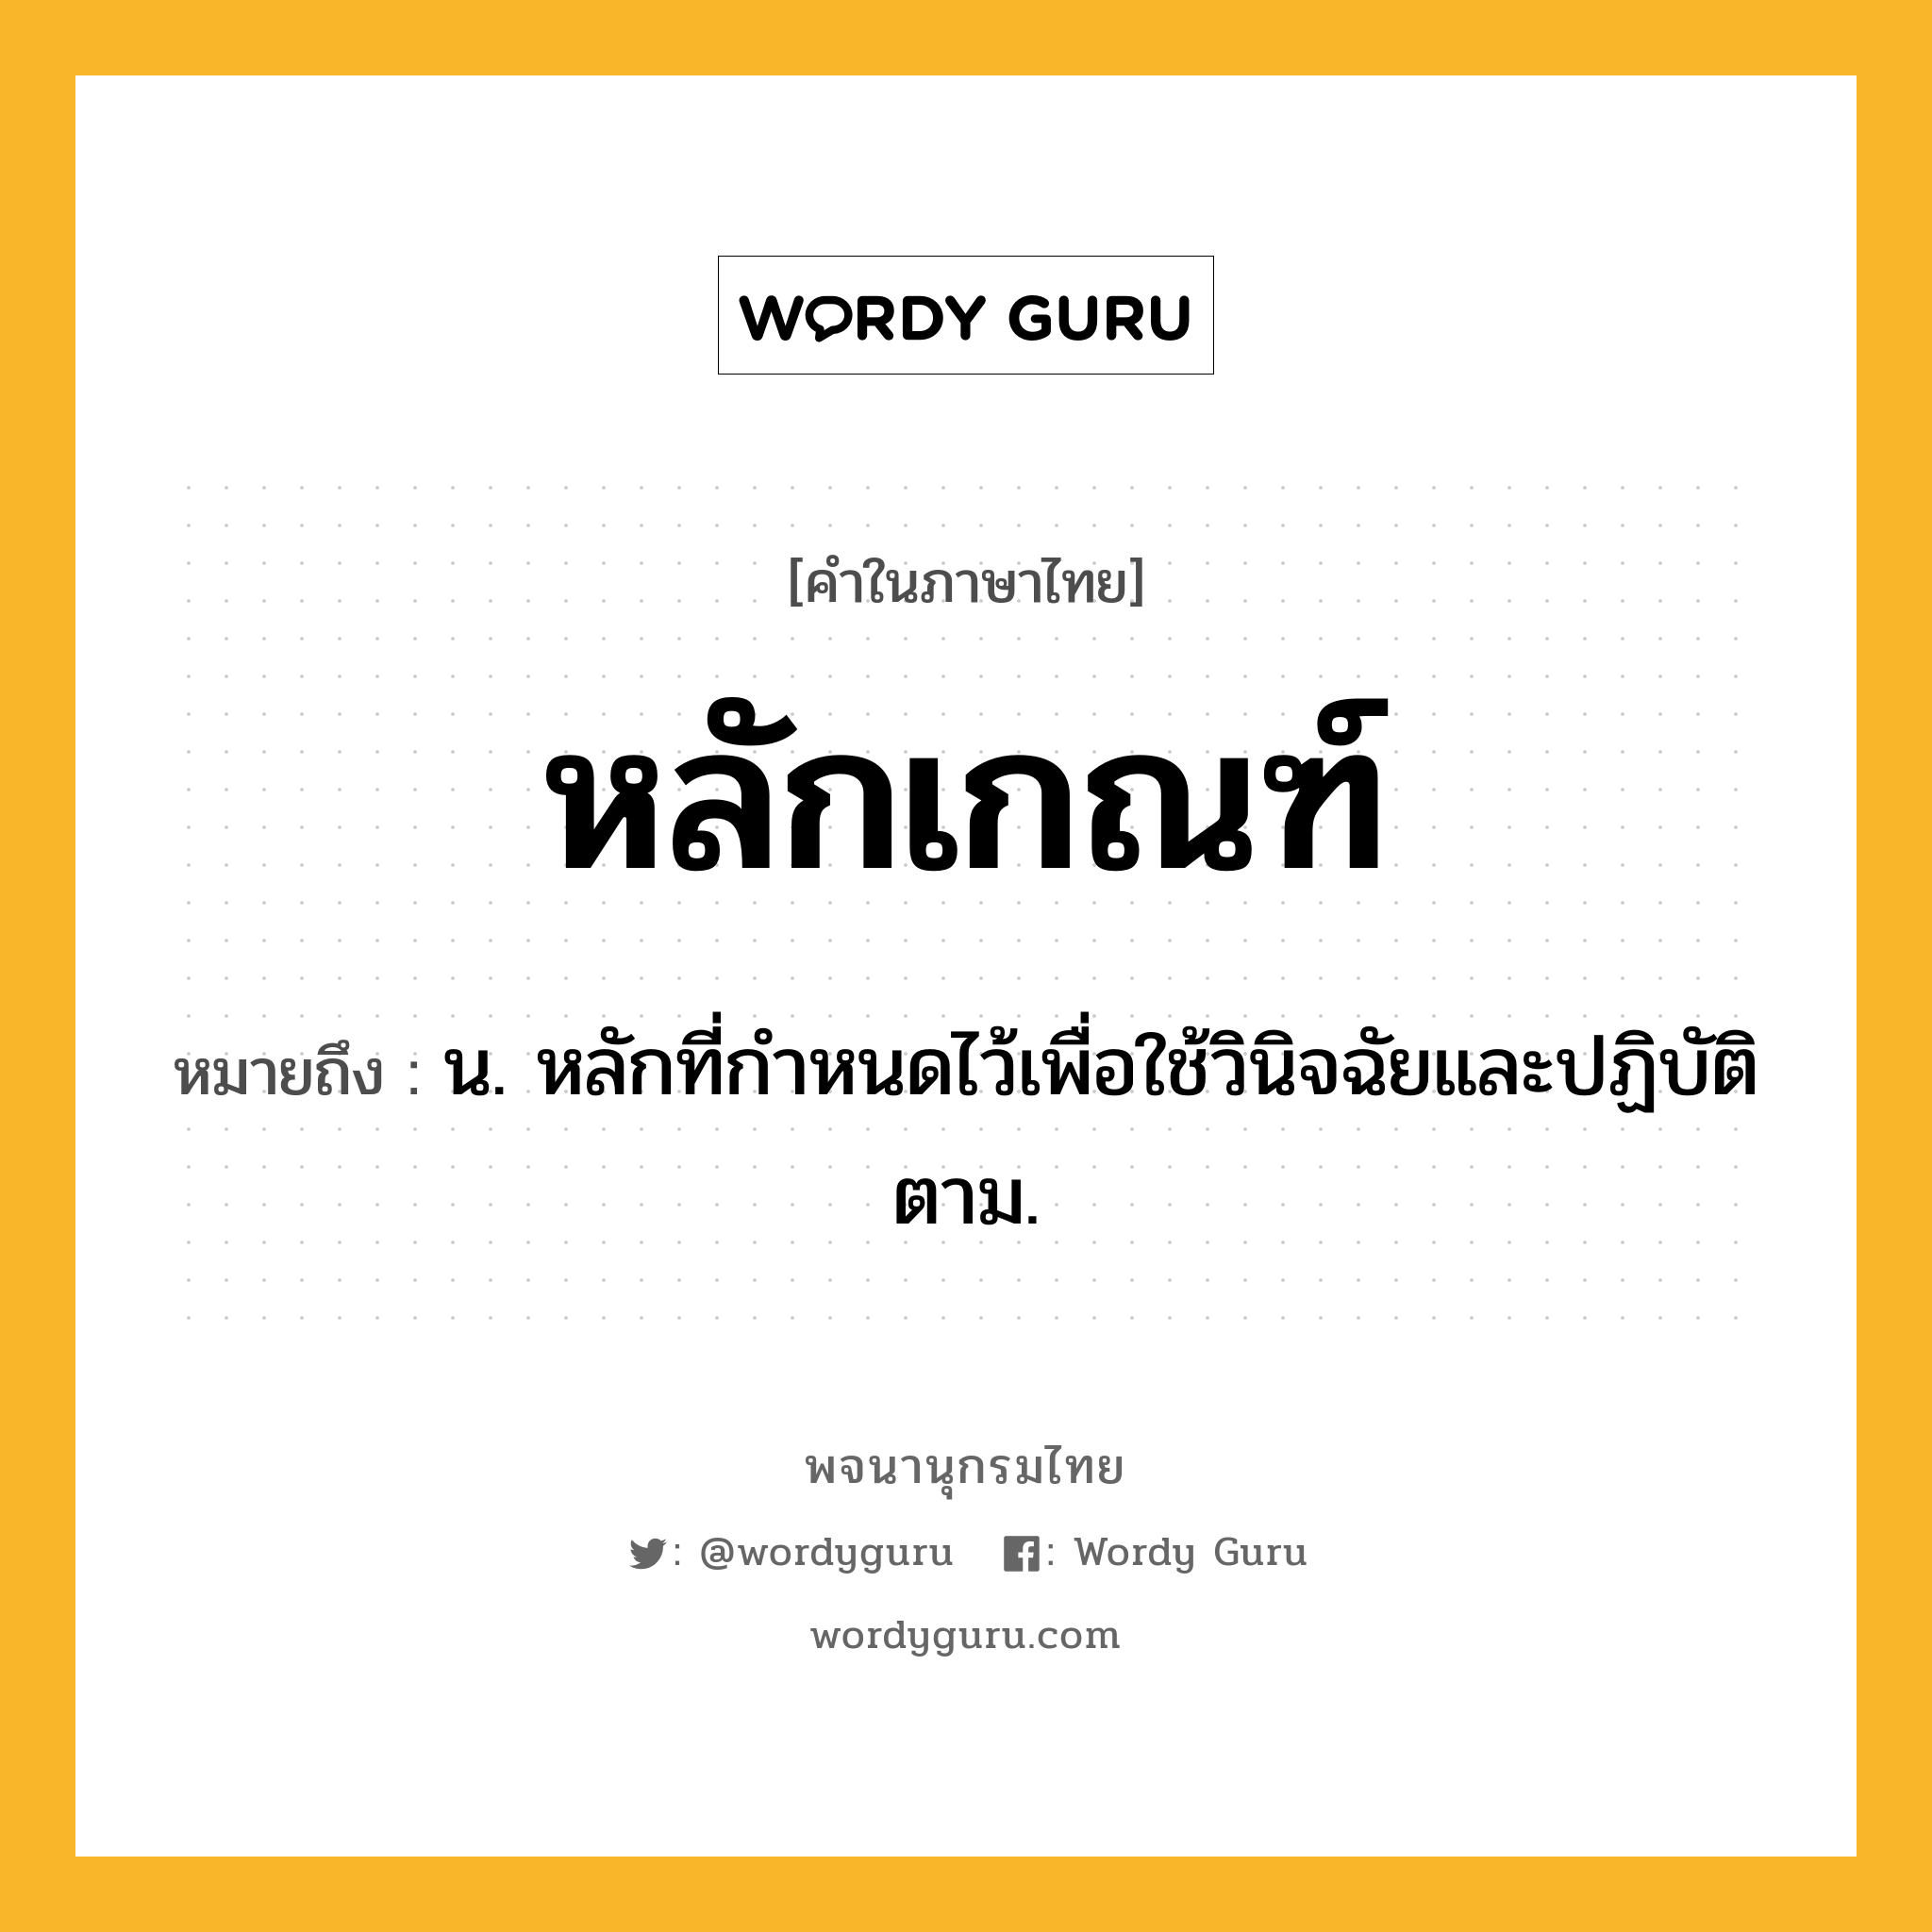 หลักเกณฑ์ หมายถึงอะไร?, คำในภาษาไทย หลักเกณฑ์ หมายถึง น. หลักที่กำหนดไว้เพื่อใช้วินิจฉัยและปฏิบัติตาม.